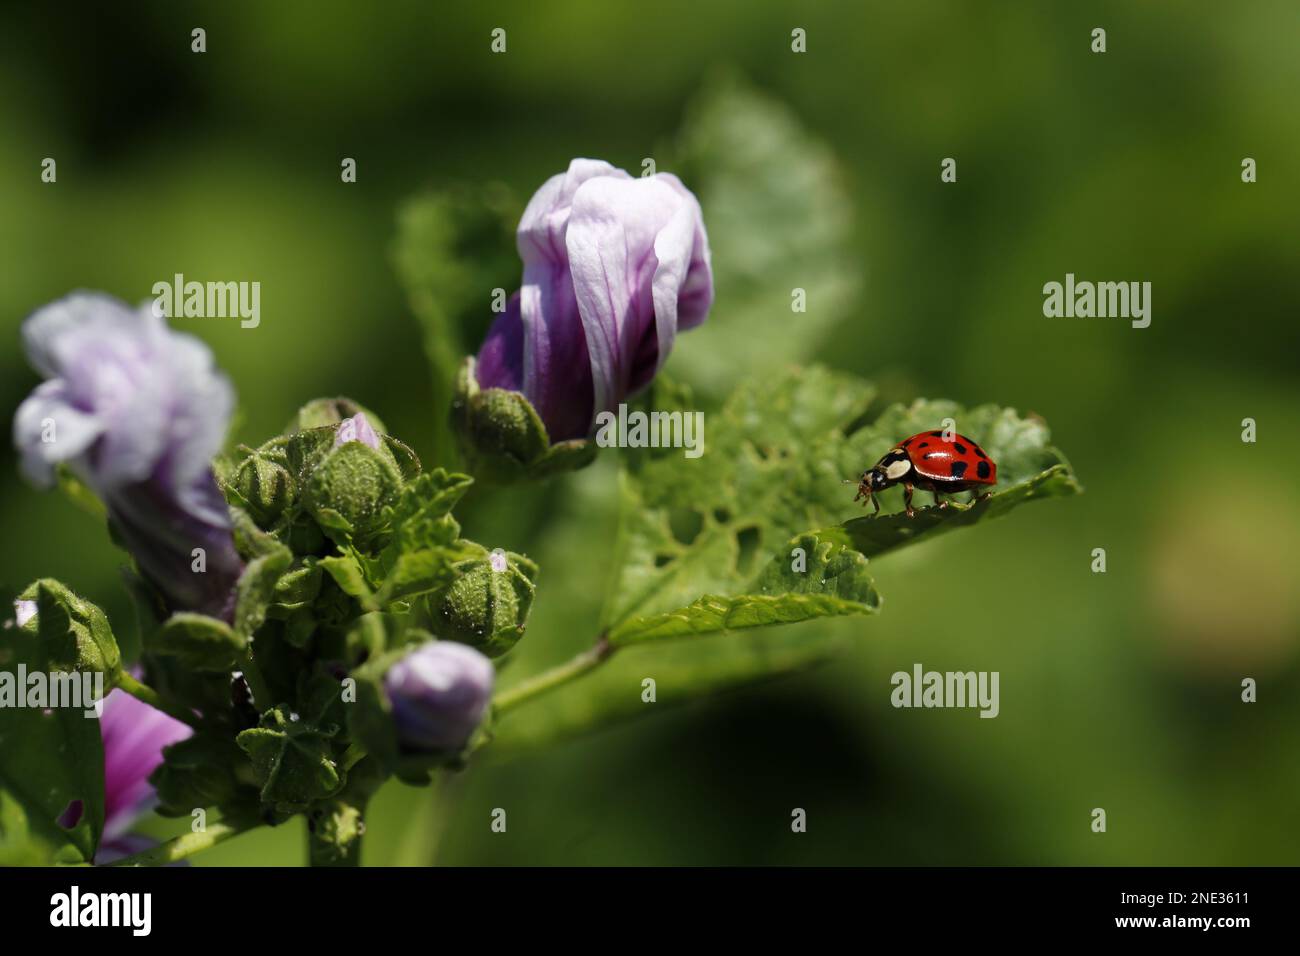 Blumen und ein Marienkäfer - Flowers and a ladybug Stock Photo